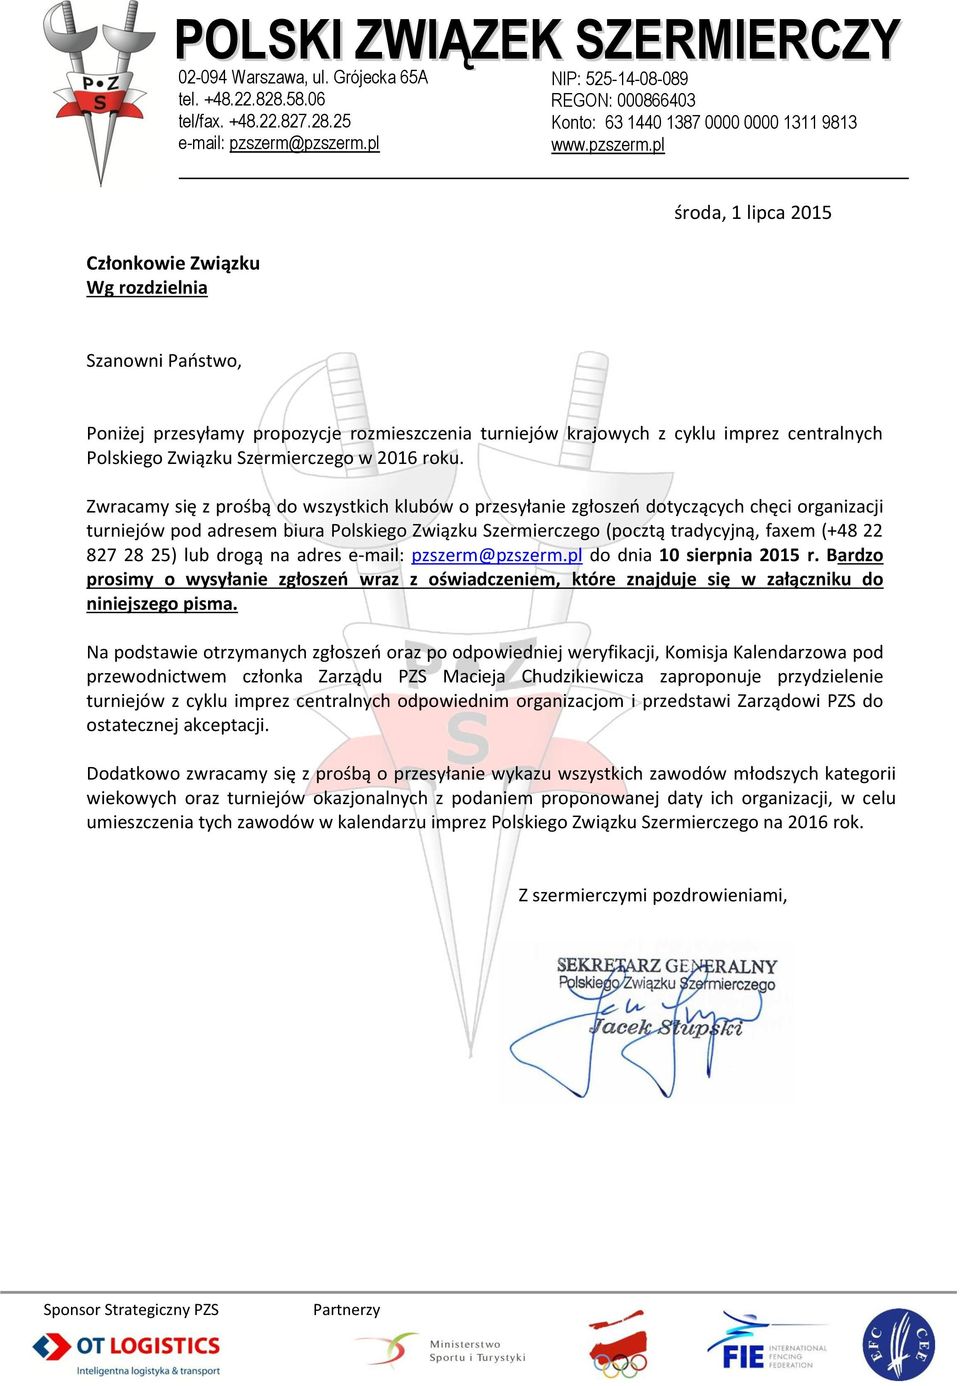 Zwracamy się z prośbą do wszystkich klubów o przesyłanie zgłoszeń dotyczących chęci organizacji turniejów pod adresem biura Polskiego Związku Szermierczego (pocztą tradycyjną, faxem (+48 22 827 28